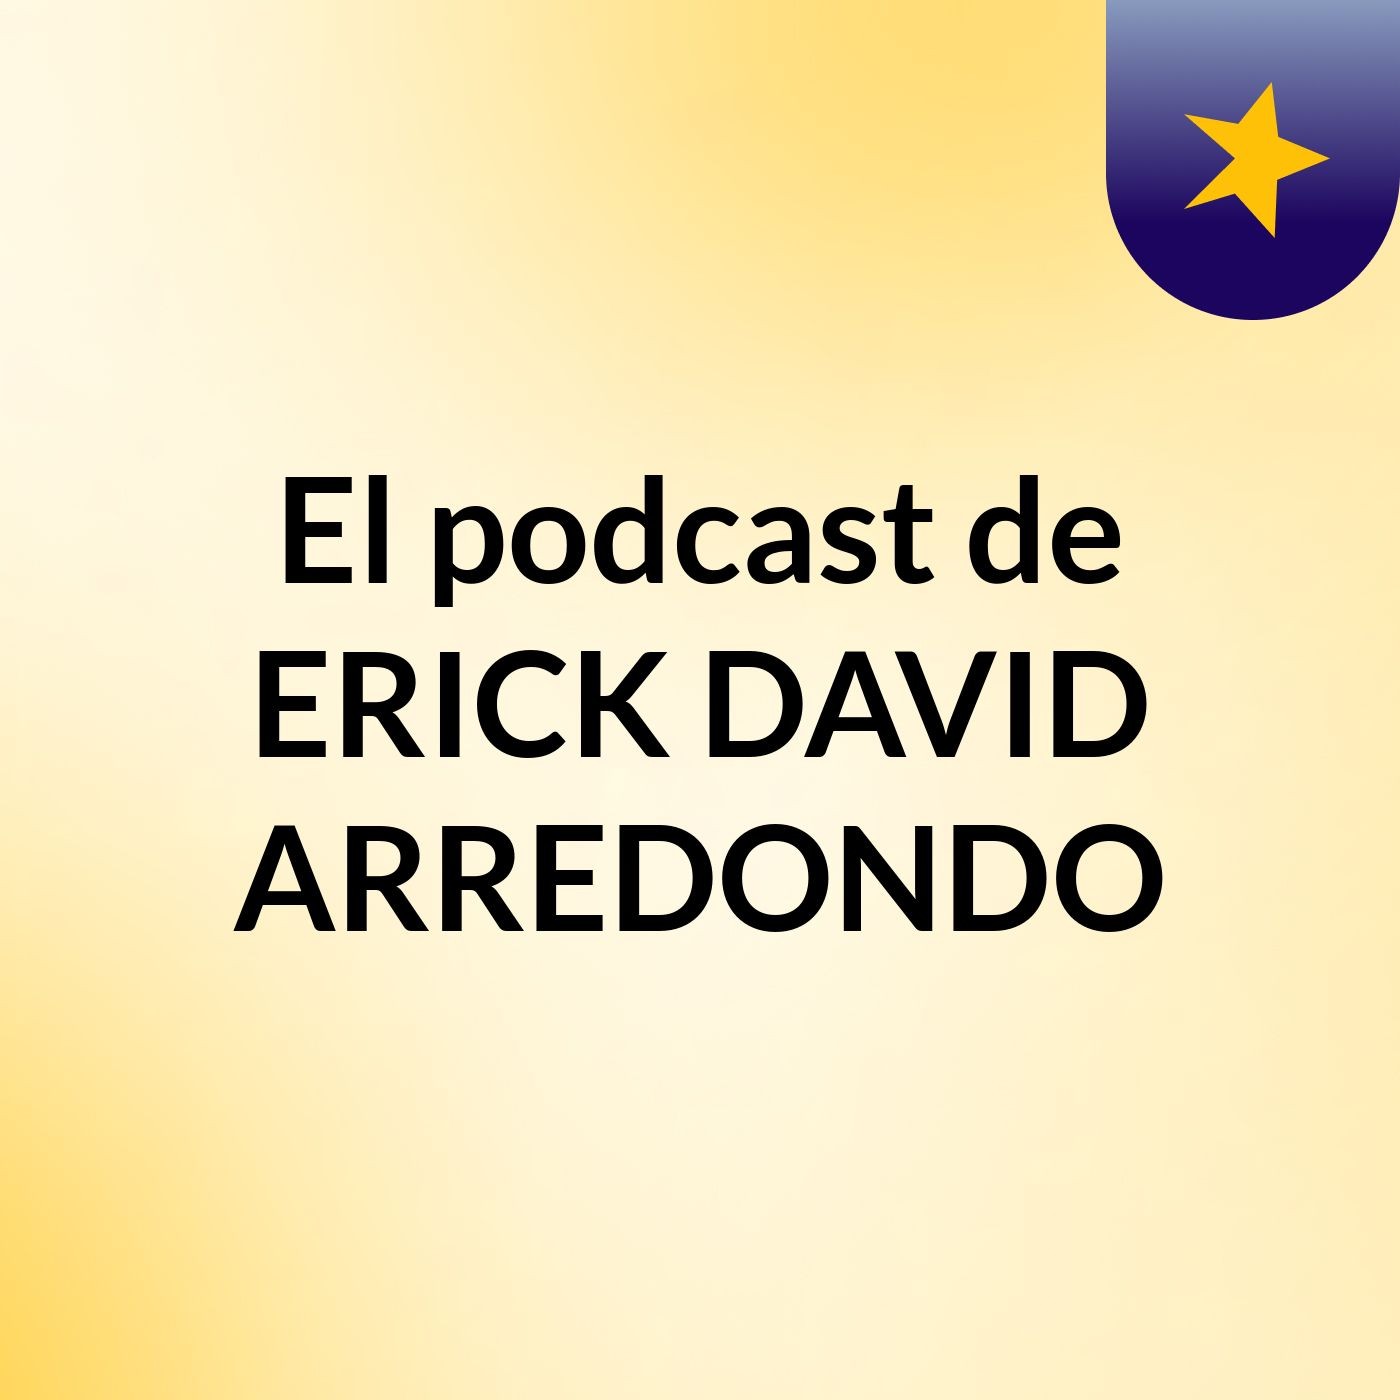 El podcast de ERICK DAVID ARREDONDO